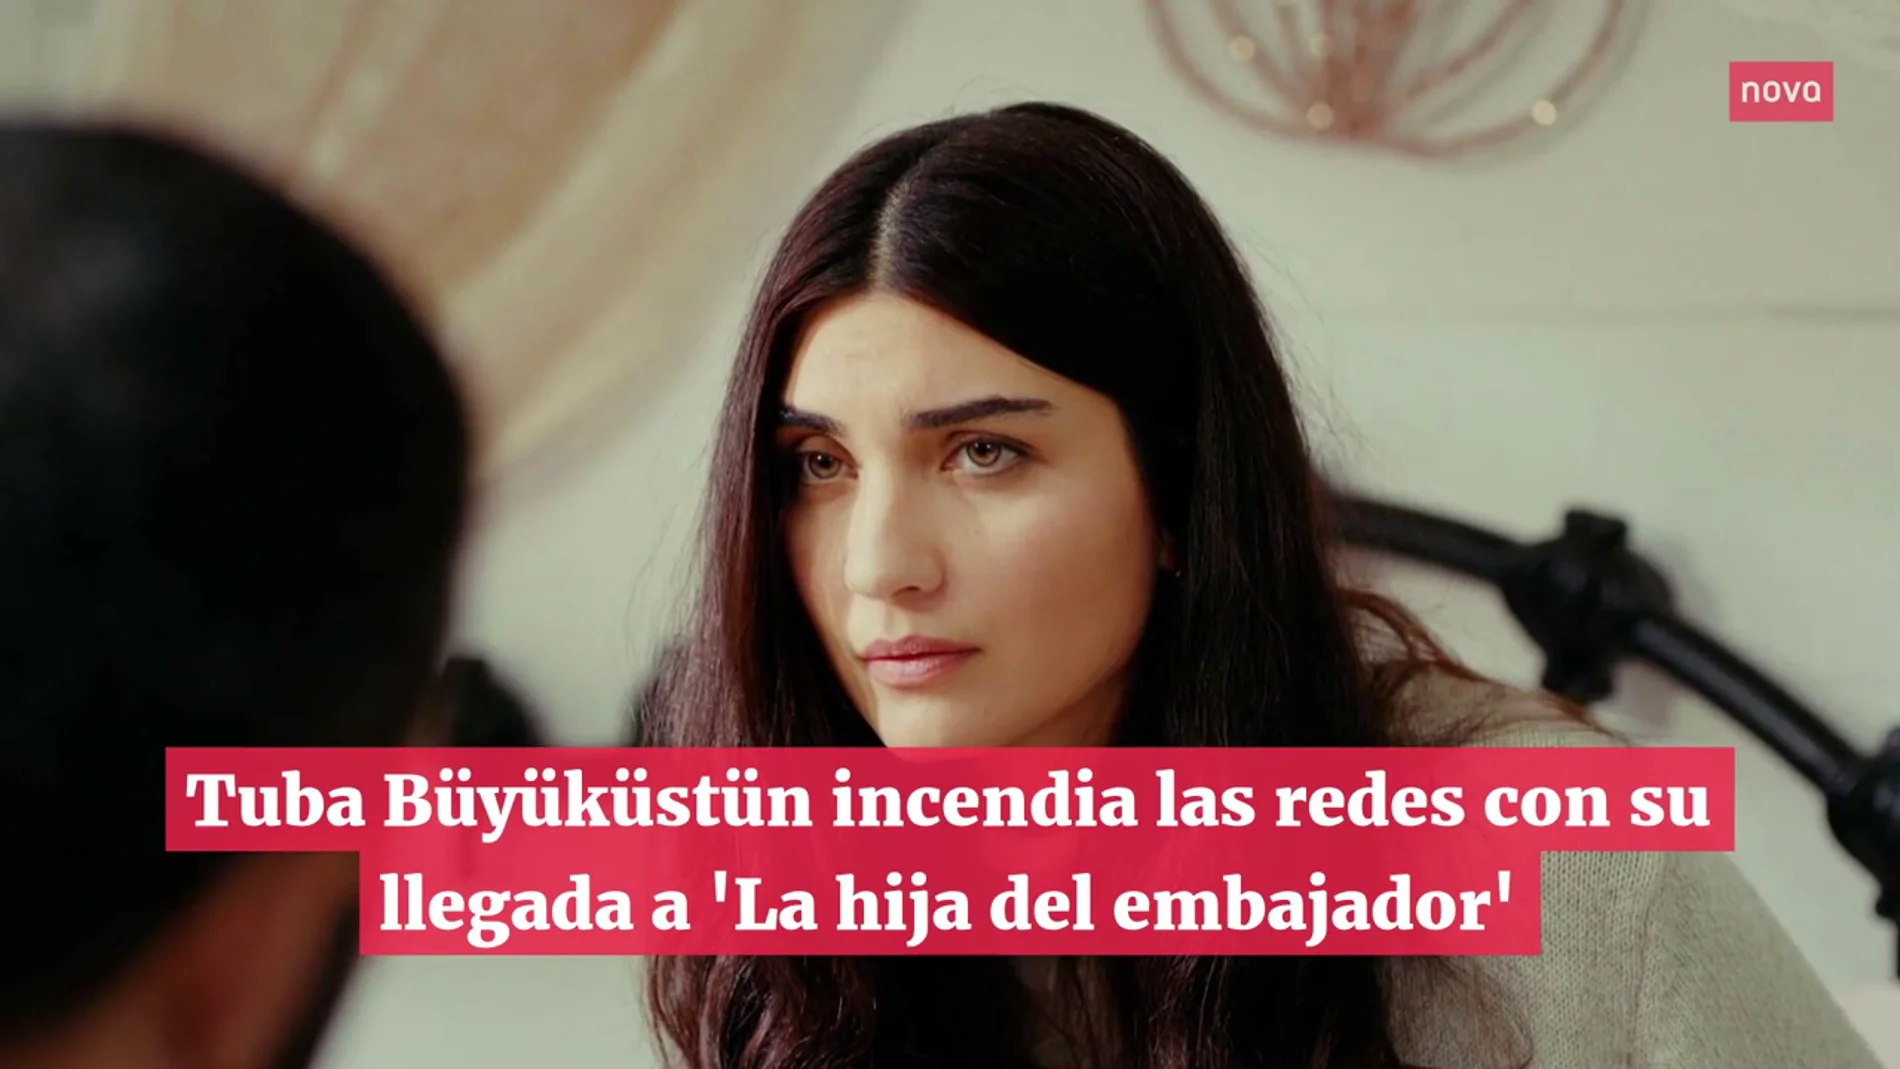 Tuba Büyüküstün incendia las redes con su incorporación a 'La hija del embajador'